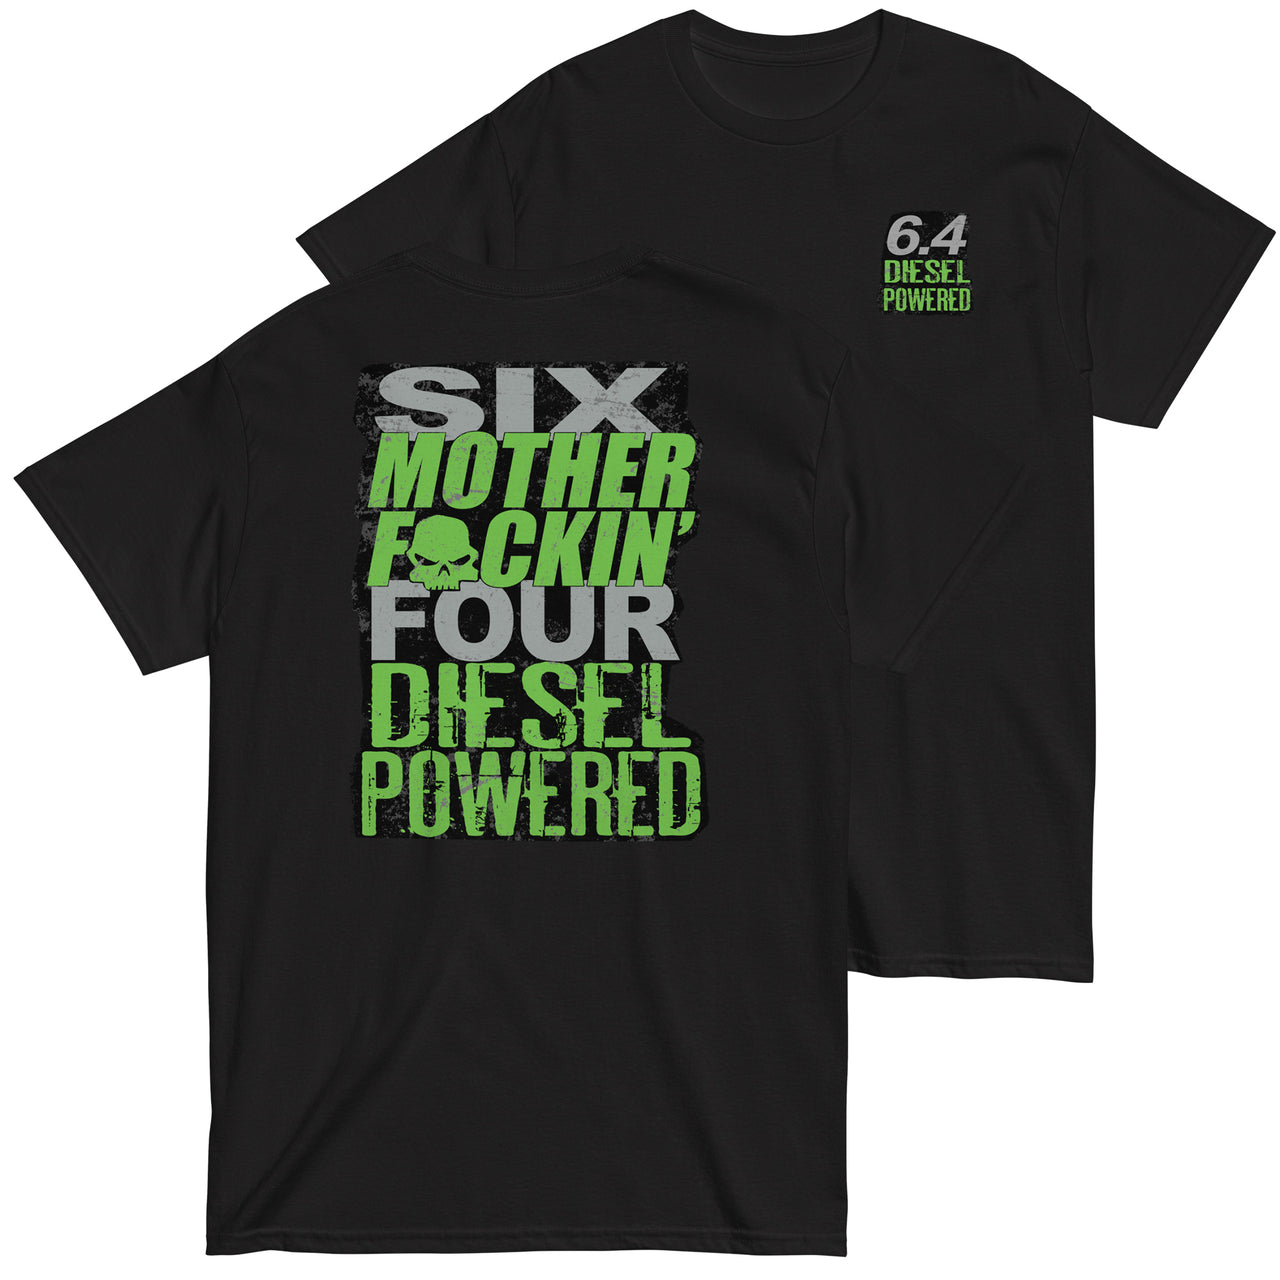 6.4 MF'N Power Stroke T-Shirt in black